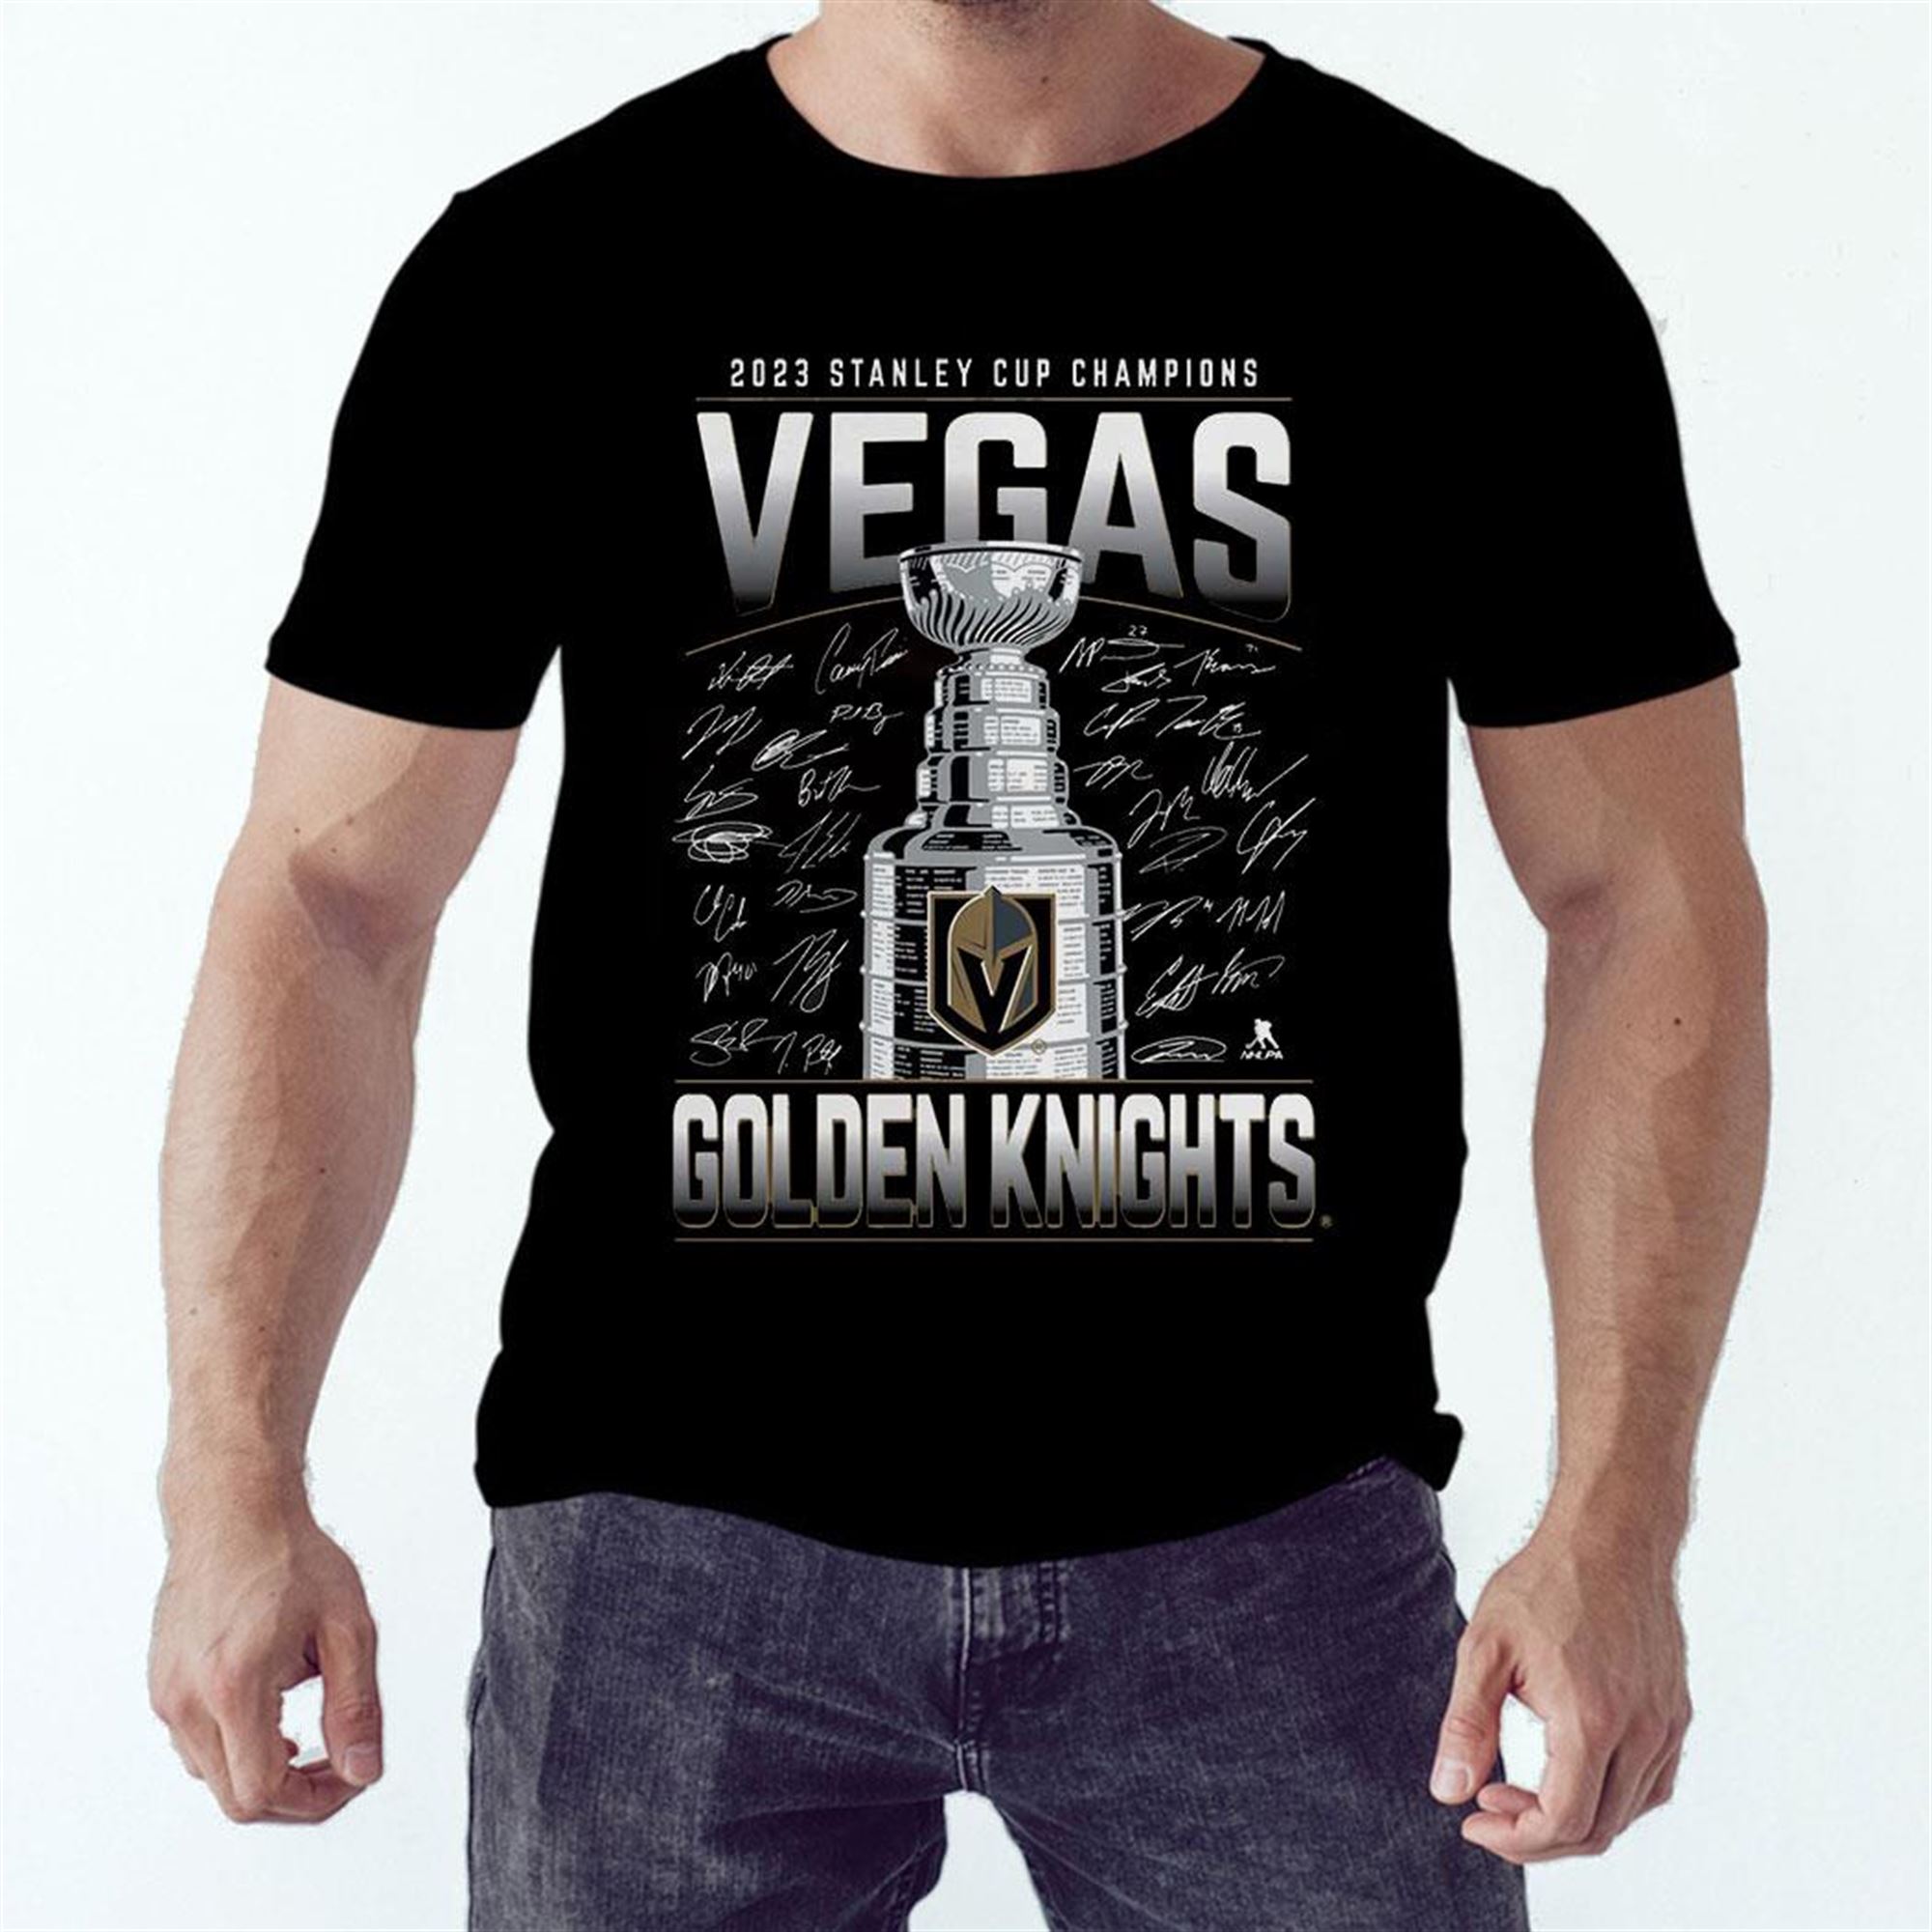 https://newagetee.com/wp-content/uploads/2023/06/shirt-2023-stanley-cup-champions-vegas-golden-knights-signature.jpg